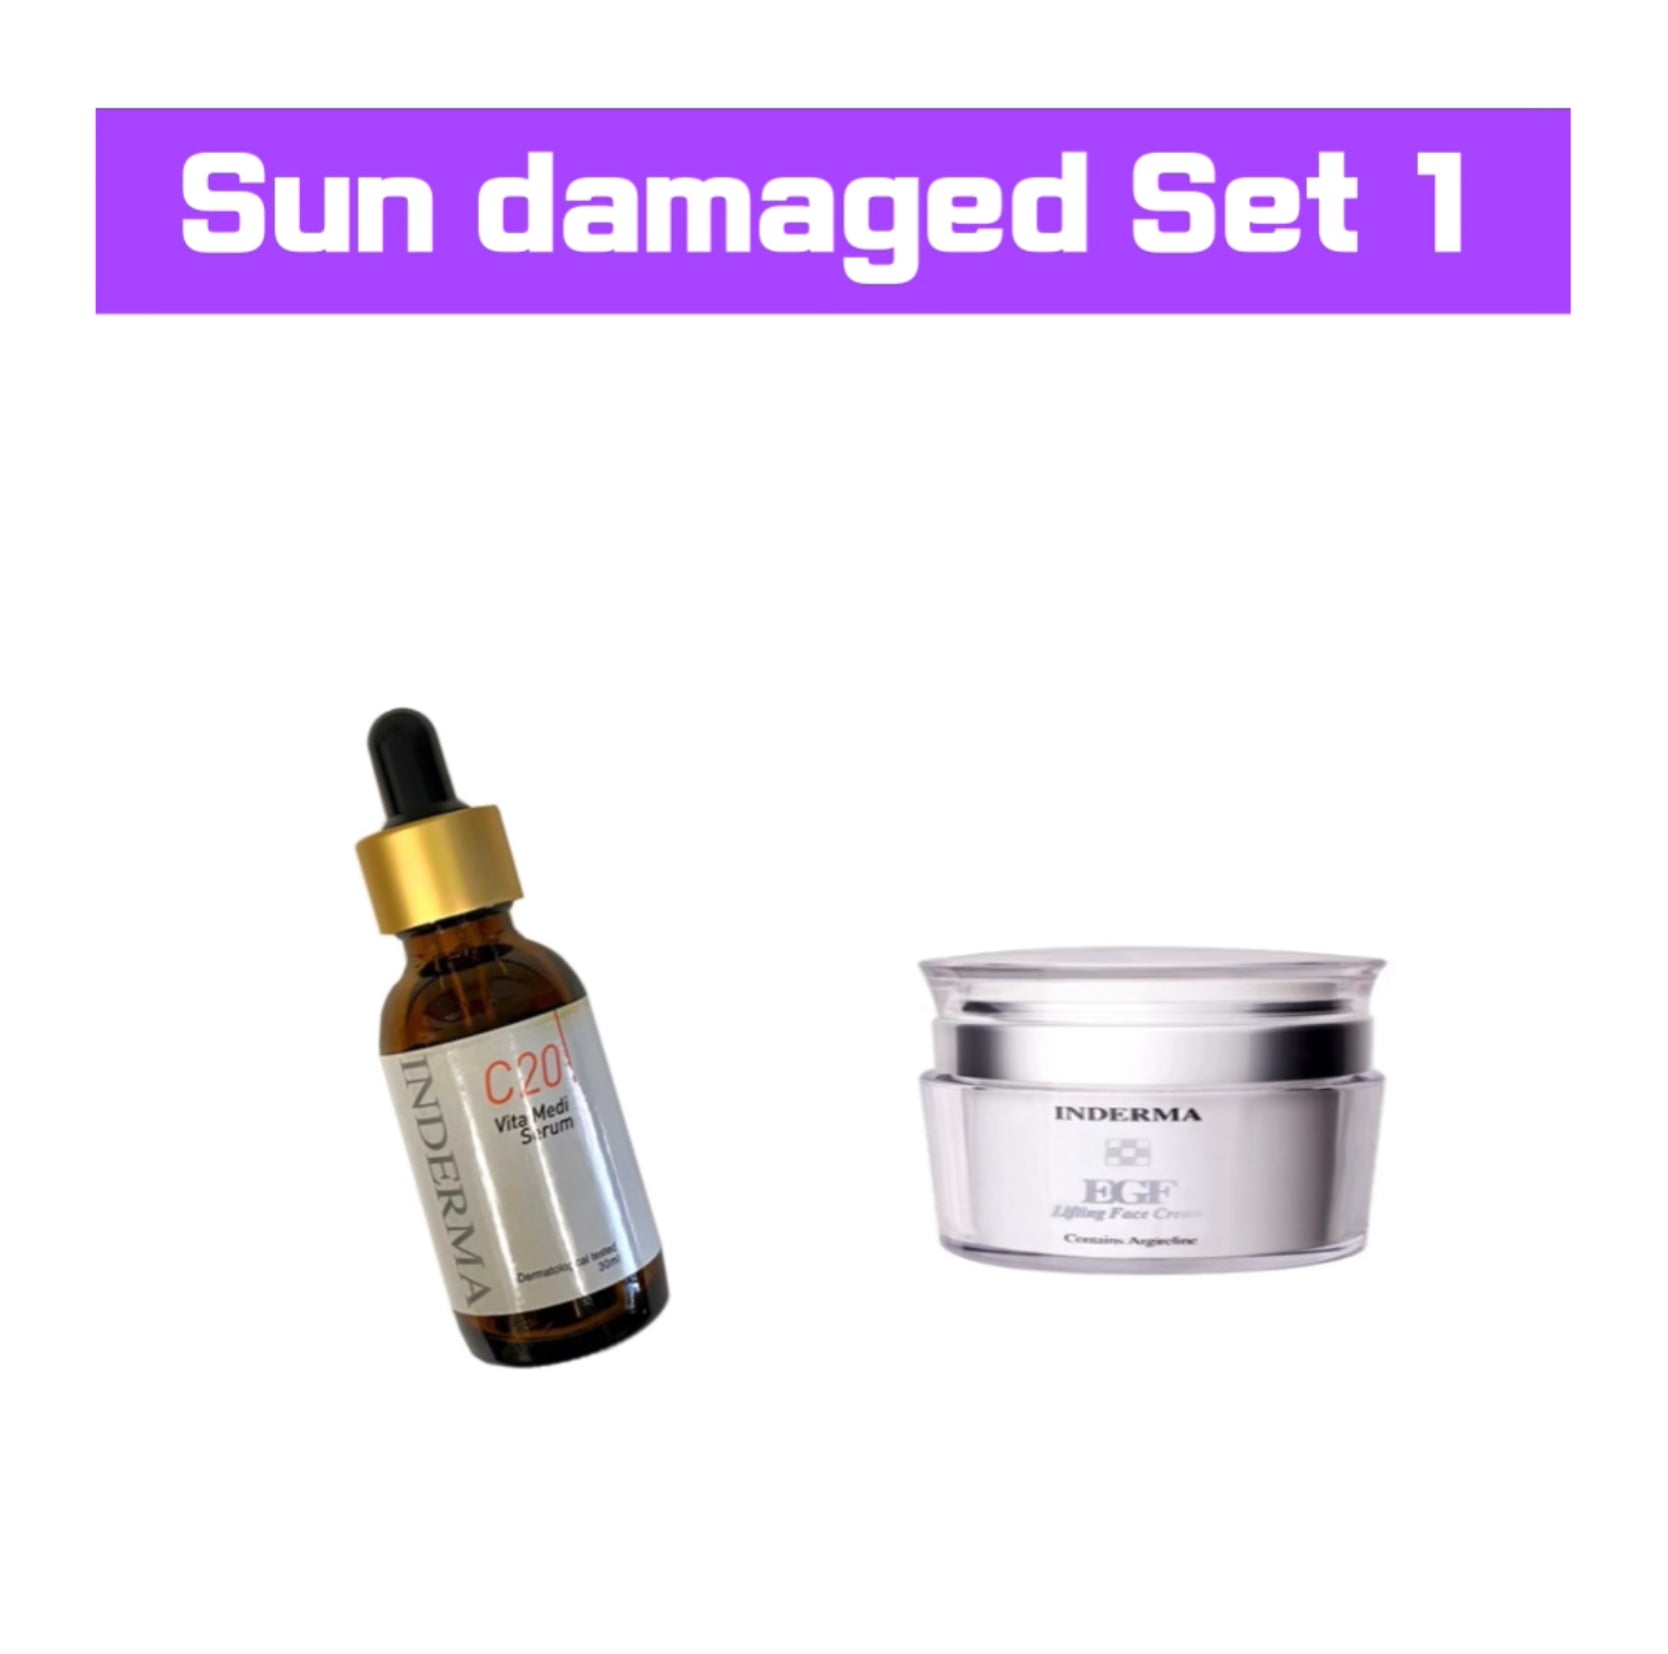 Sun damaged Set 1